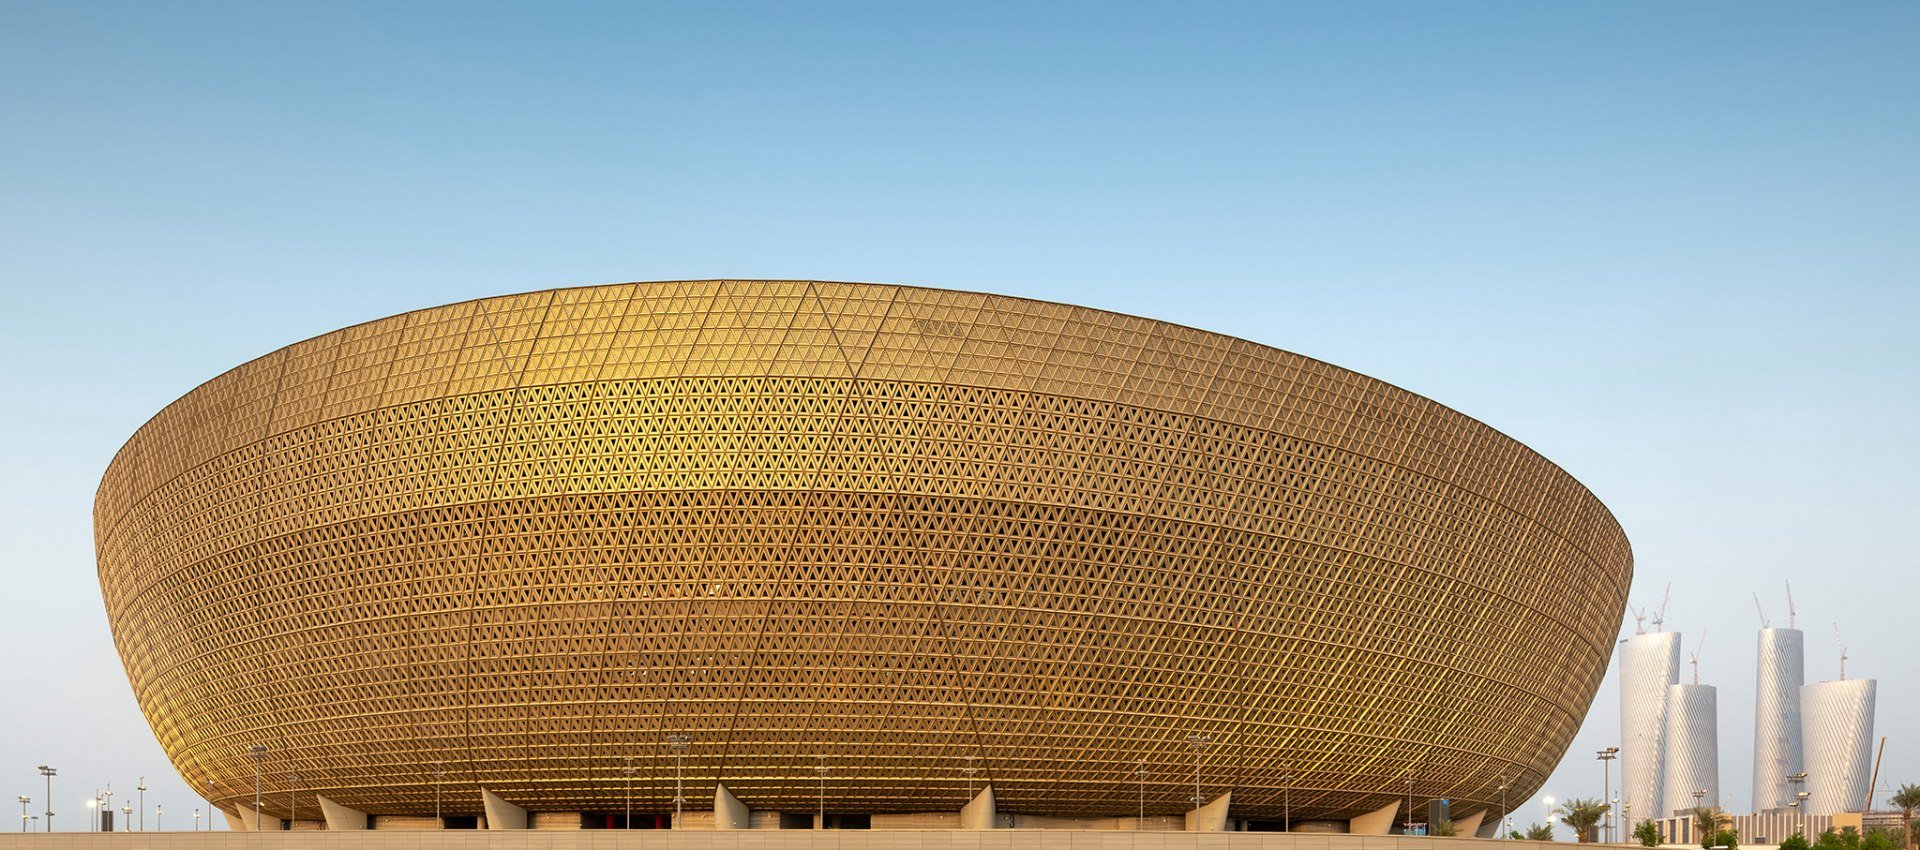 O Estádio Nacional de Lusail será o palco da grande final da Copa do Mundo de 2022, no Catar